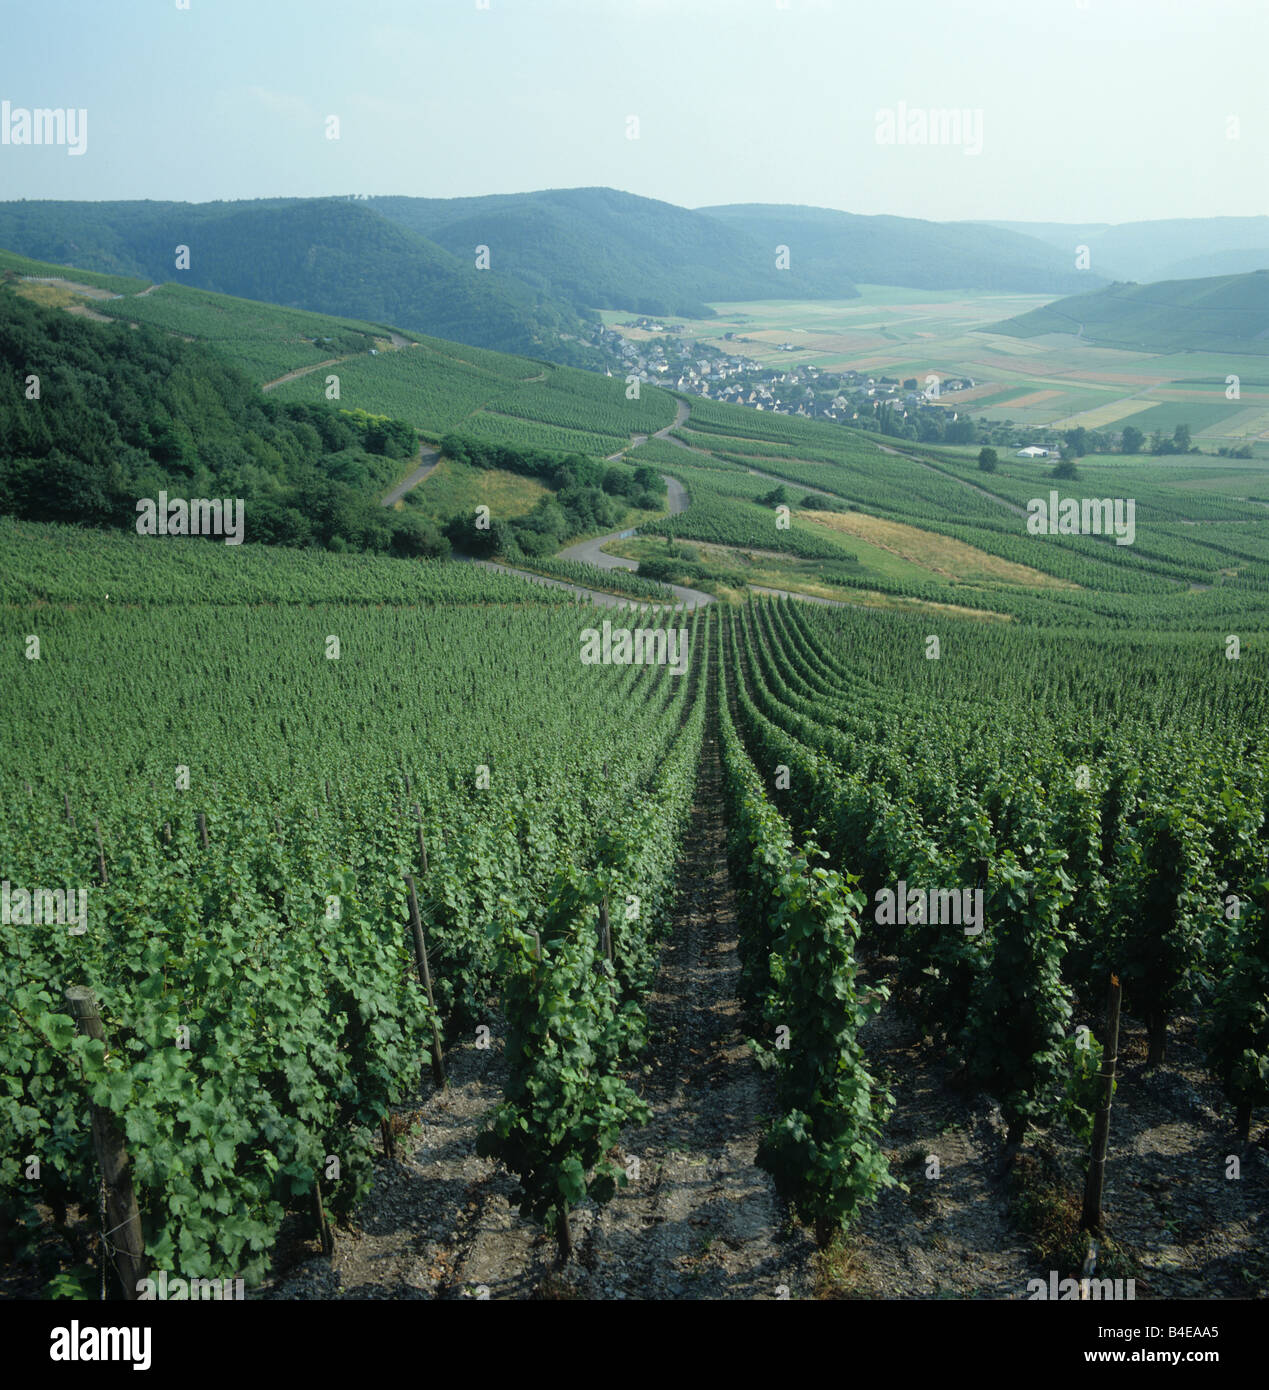 Vue de dessus des rangées de vignes et de plusieurs vignobles dans la vallée de la Moselle, Allemagne Banque D'Images